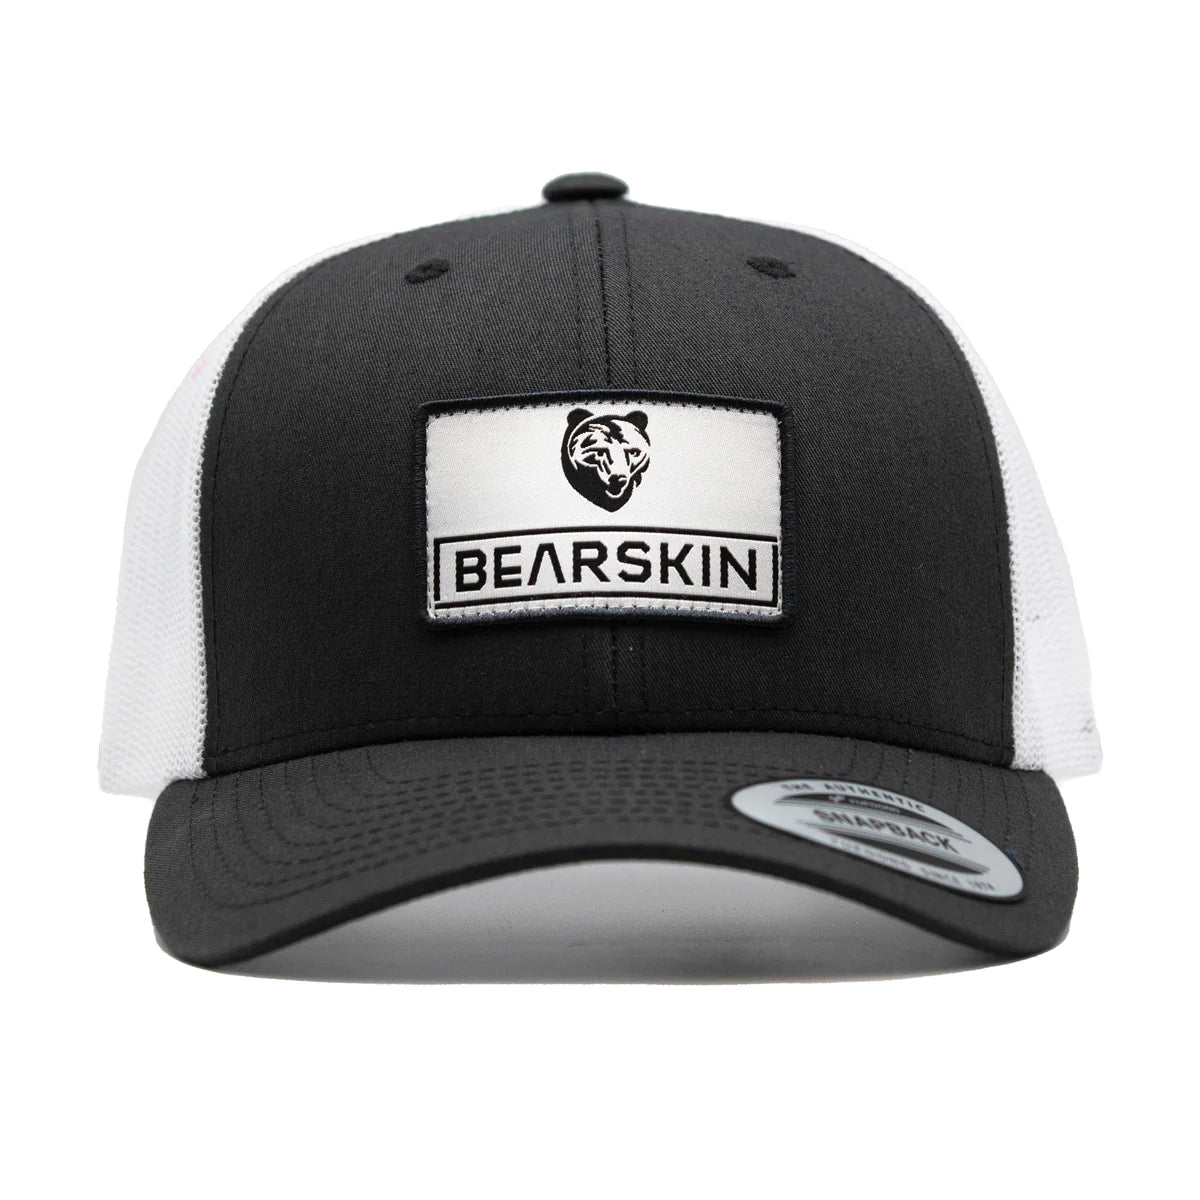 Bearskin Trucker caps